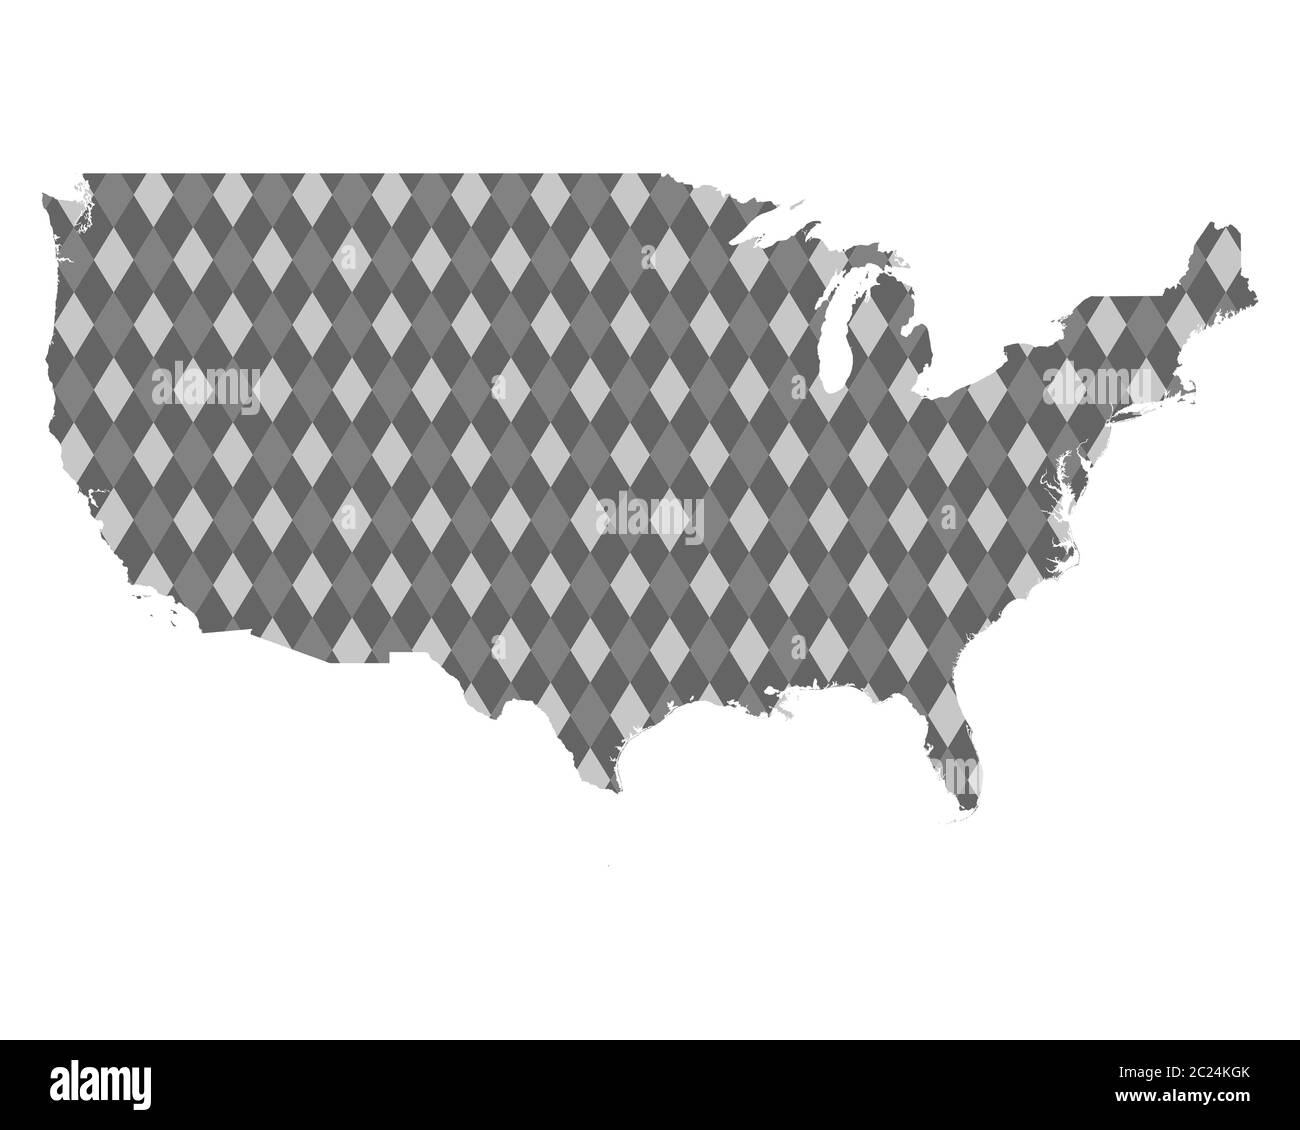 Karte der USA mit farbigen Rauten Stock Photo